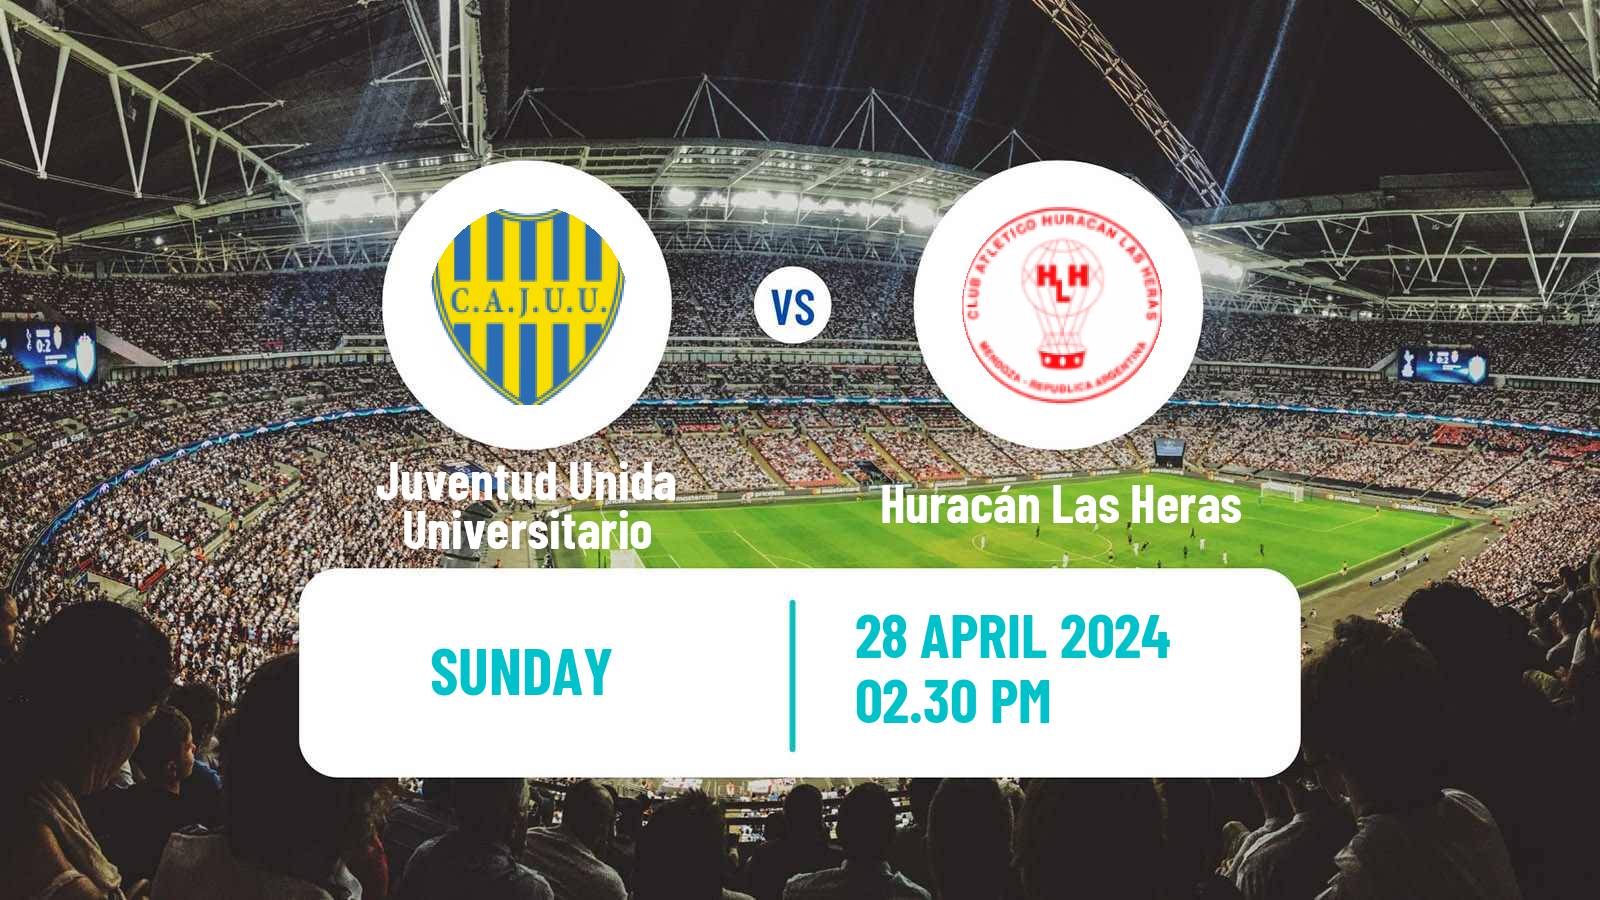 Soccer Argentinian Torneo Federal Juventud Unida Universitario - Huracán Las Heras